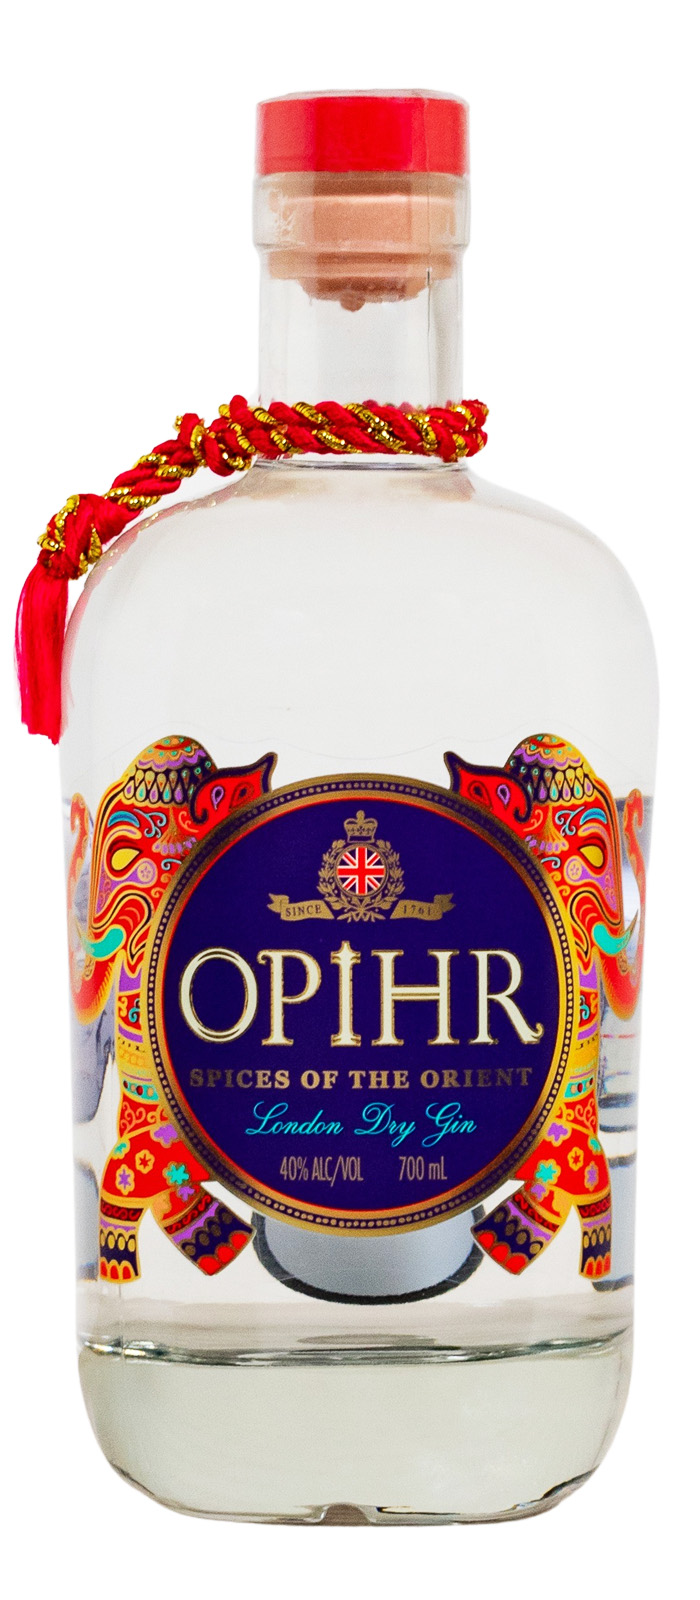 Opihr Oriental Spiced London Dry günstig kaufen | Gin